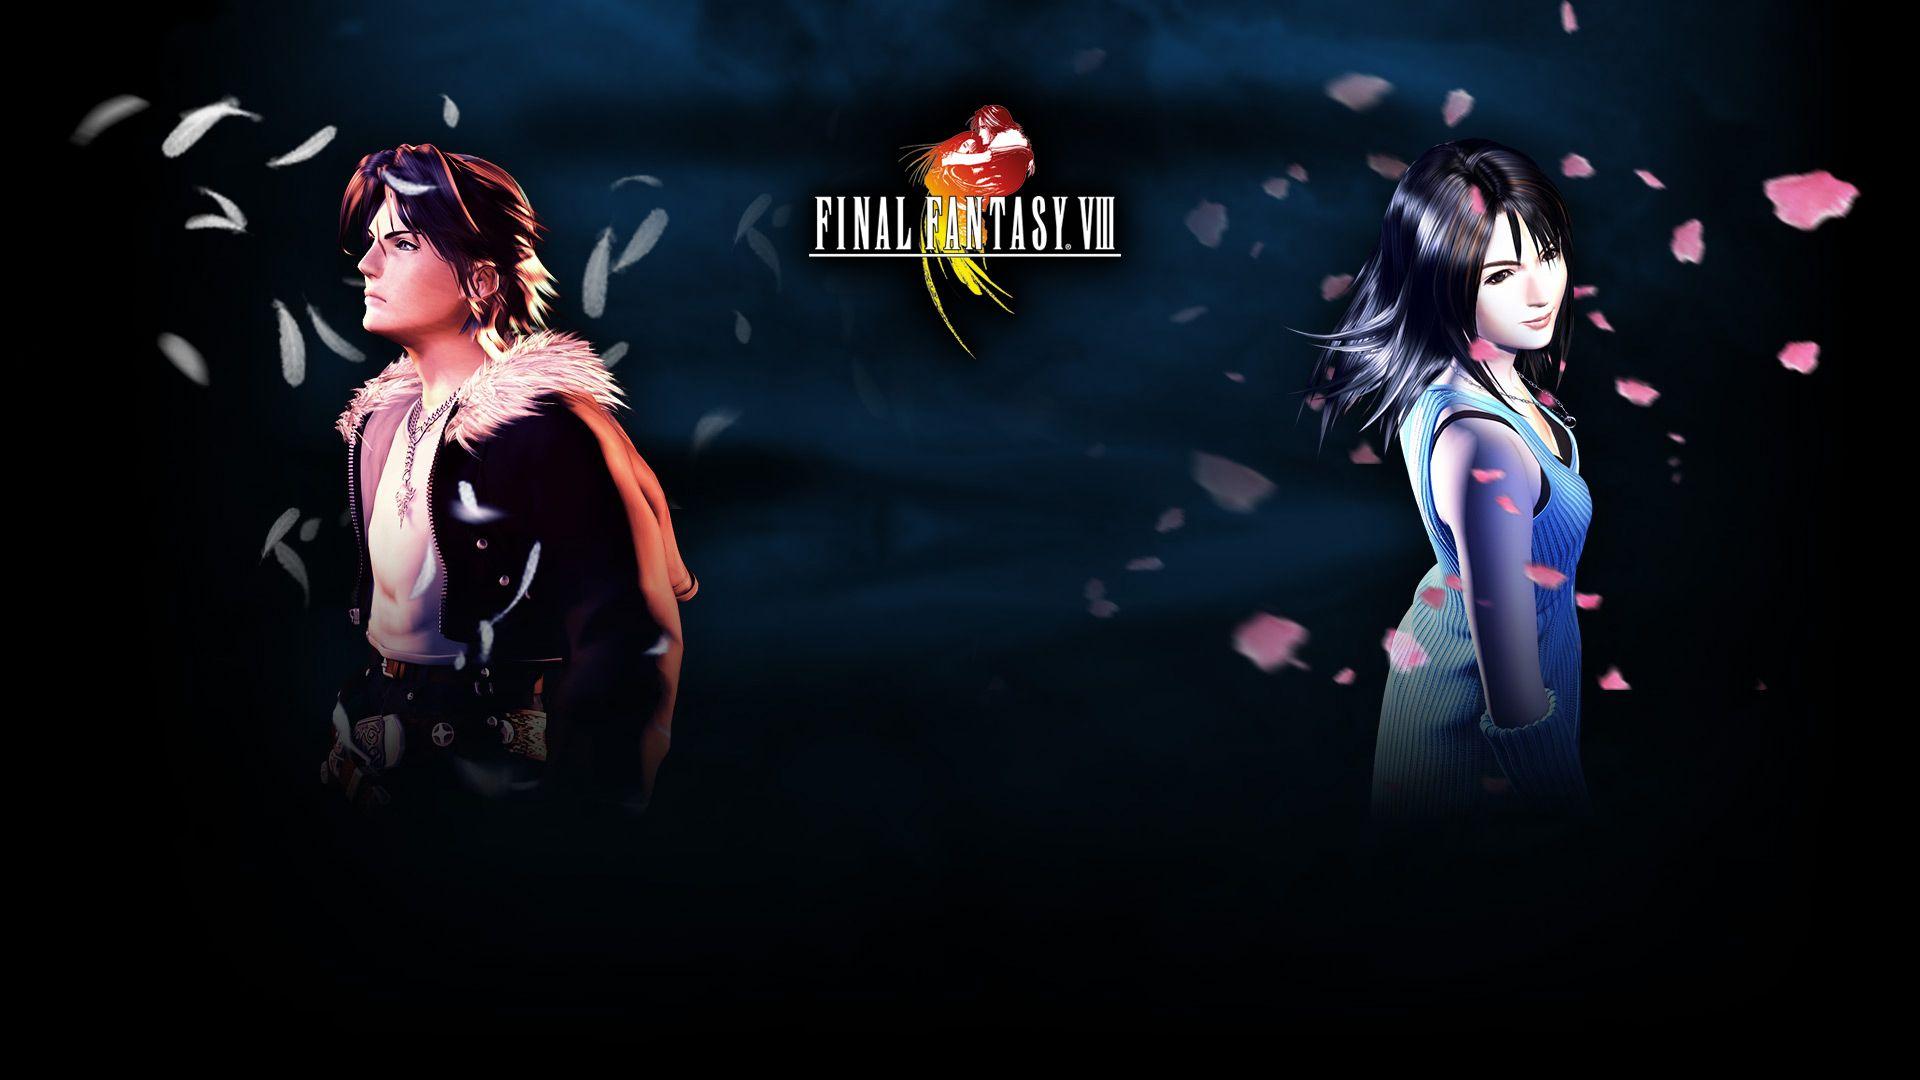 Hình nền FF8: Bạn là fan hâm mộ của tựa game Final Fantasy VIII (FF8)? Hãy tải ngay các hình nền FF8 đẹp nhất từ trang web của chúng tôi. Hình ảnh sống động, đẹp mắt sẽ khiến bạn không thể rời mắt khỏi màn hình điện thoại hay máy tính của mình.